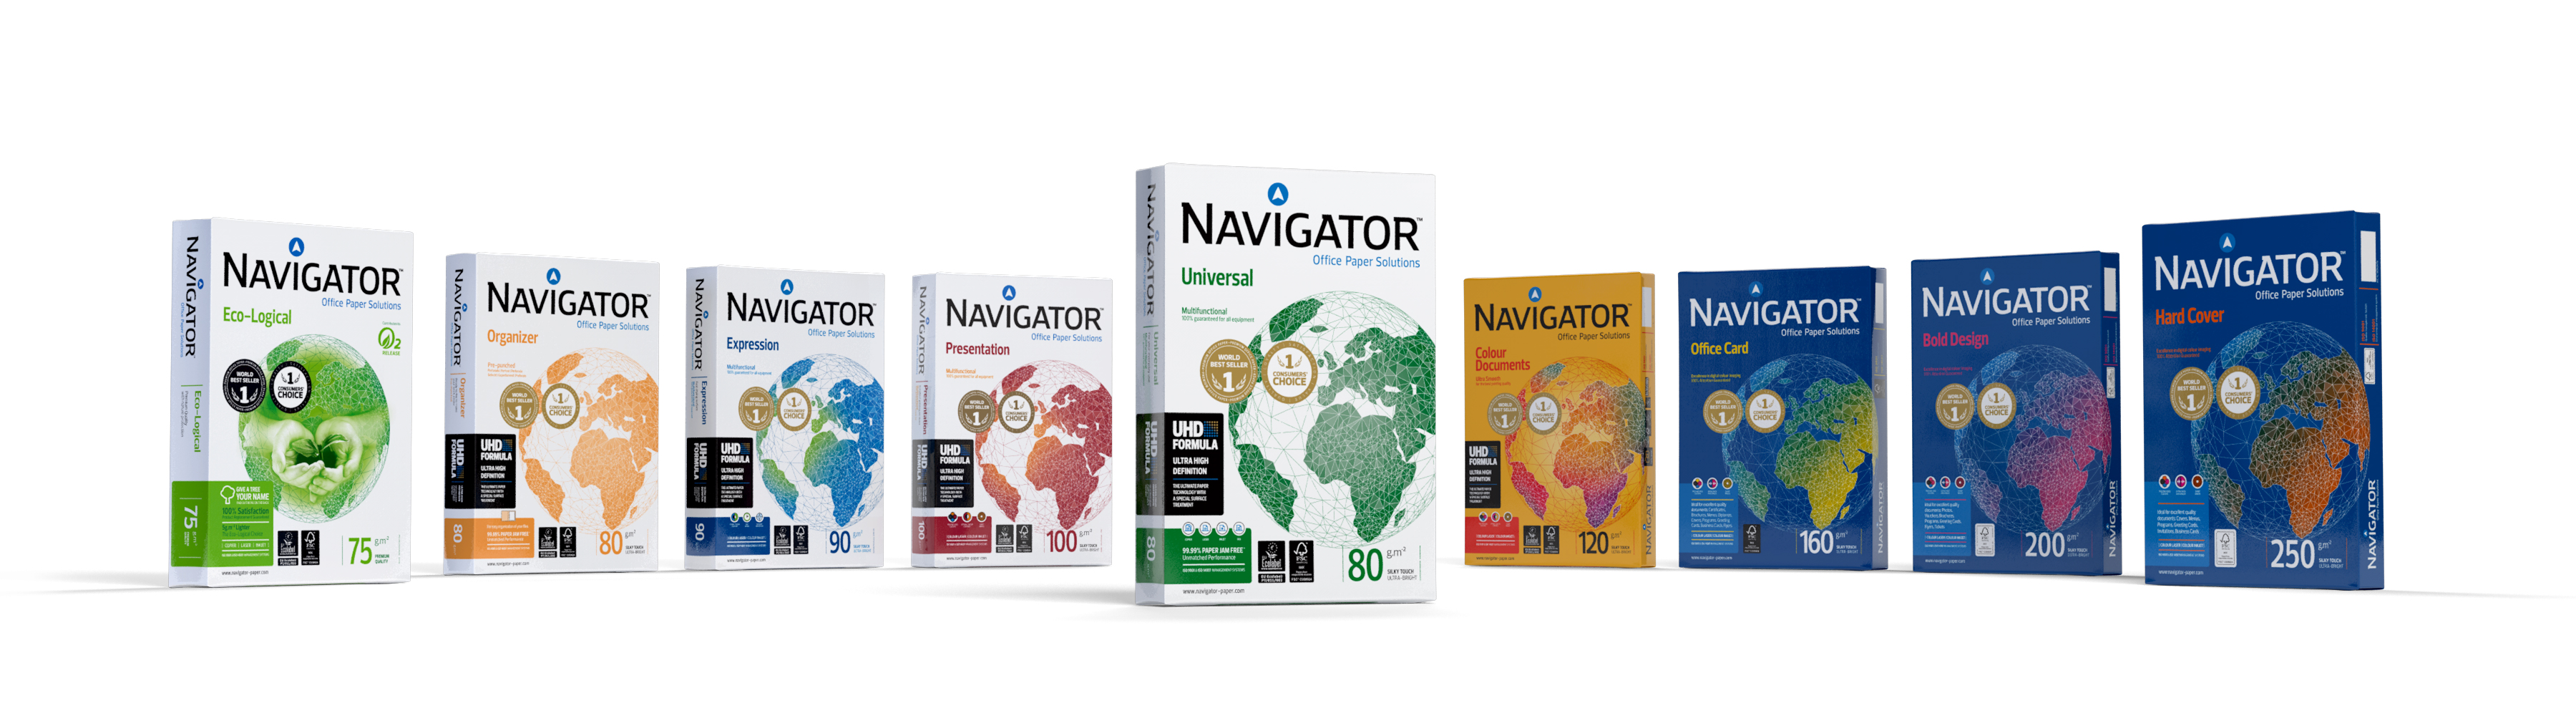 Navigator® Premium Multipurpose Copy Paper, 97 Bright, 20 lb Bond